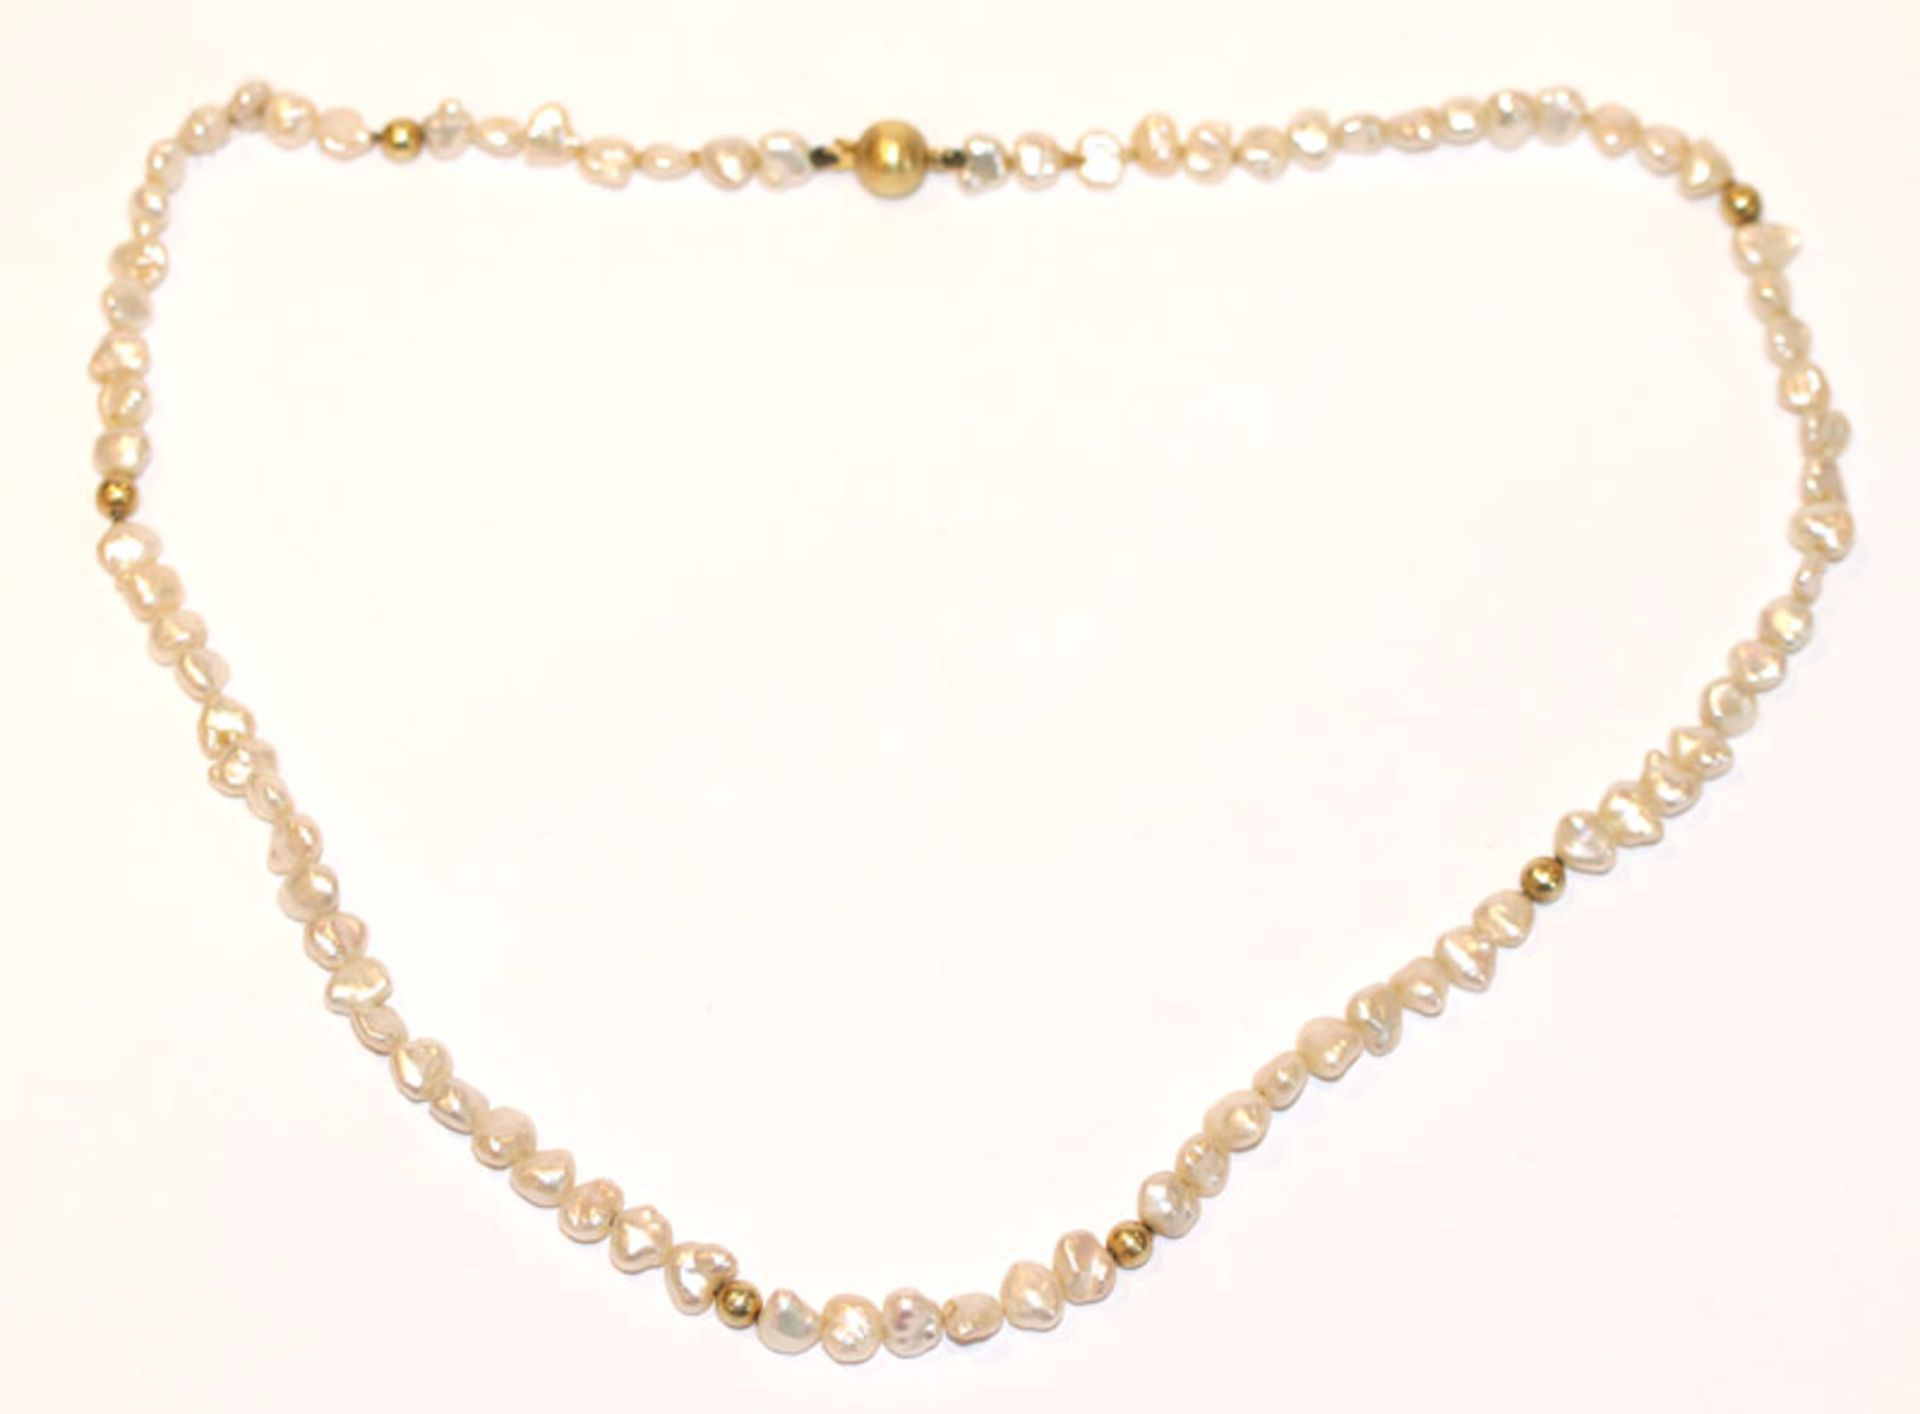 Süsswasser-Perlenkette mit 14 k Gelbgold Schließe und Zwischenkugeln, 40 cm